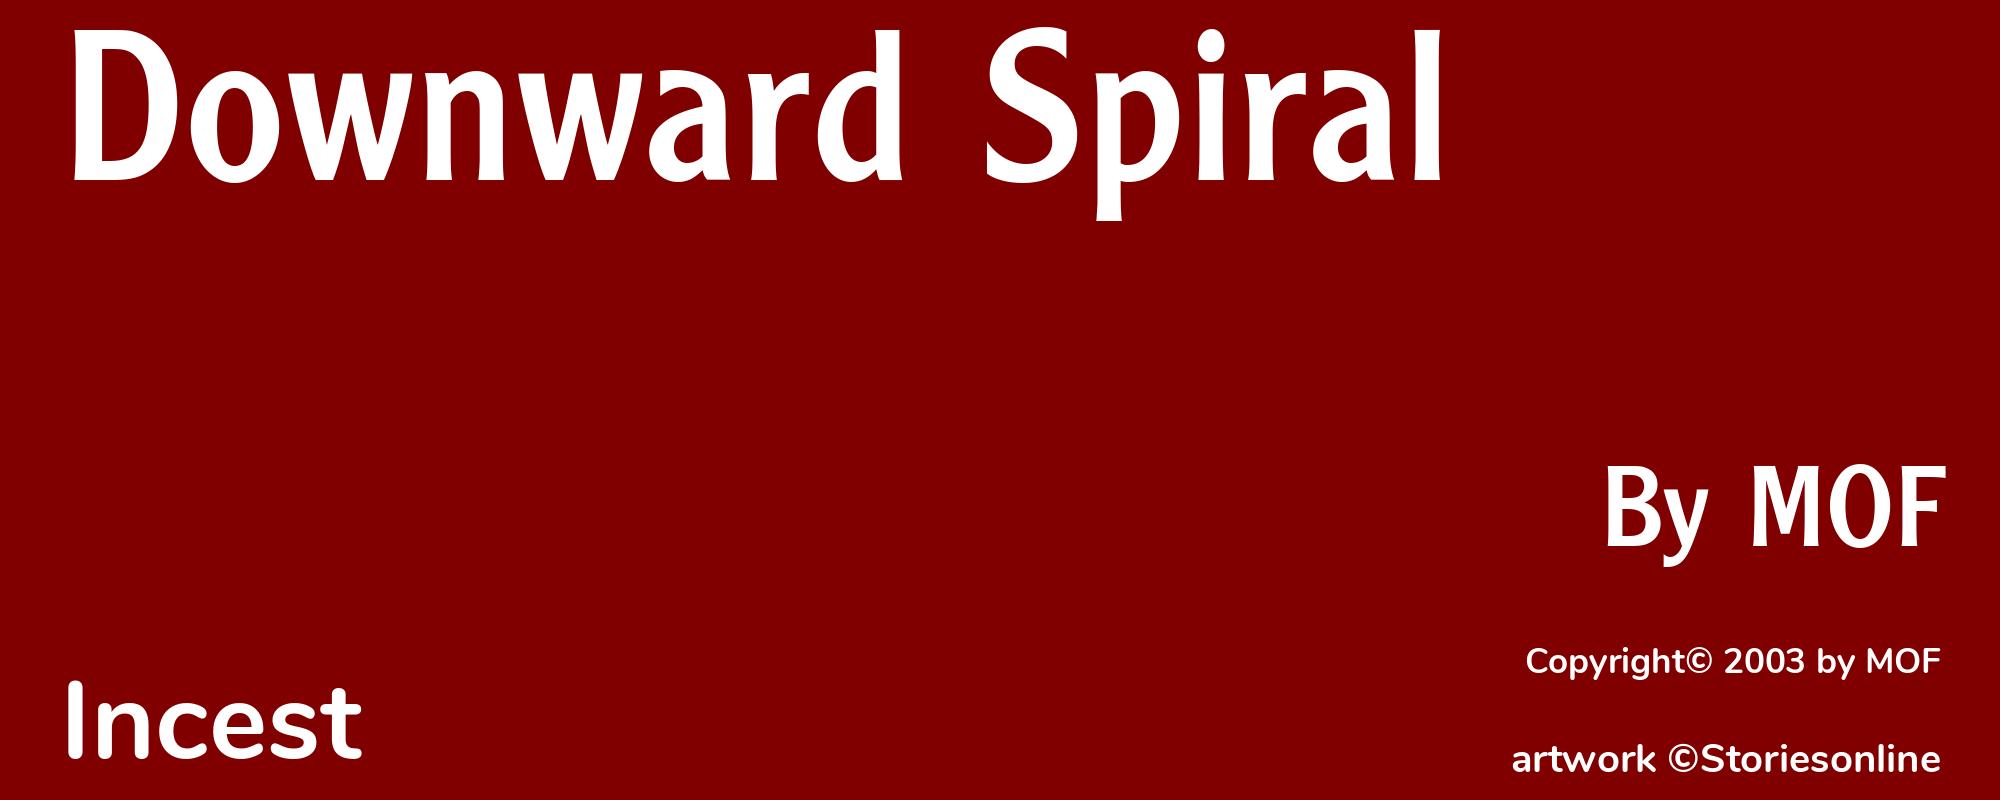 Downward Spiral - Cover